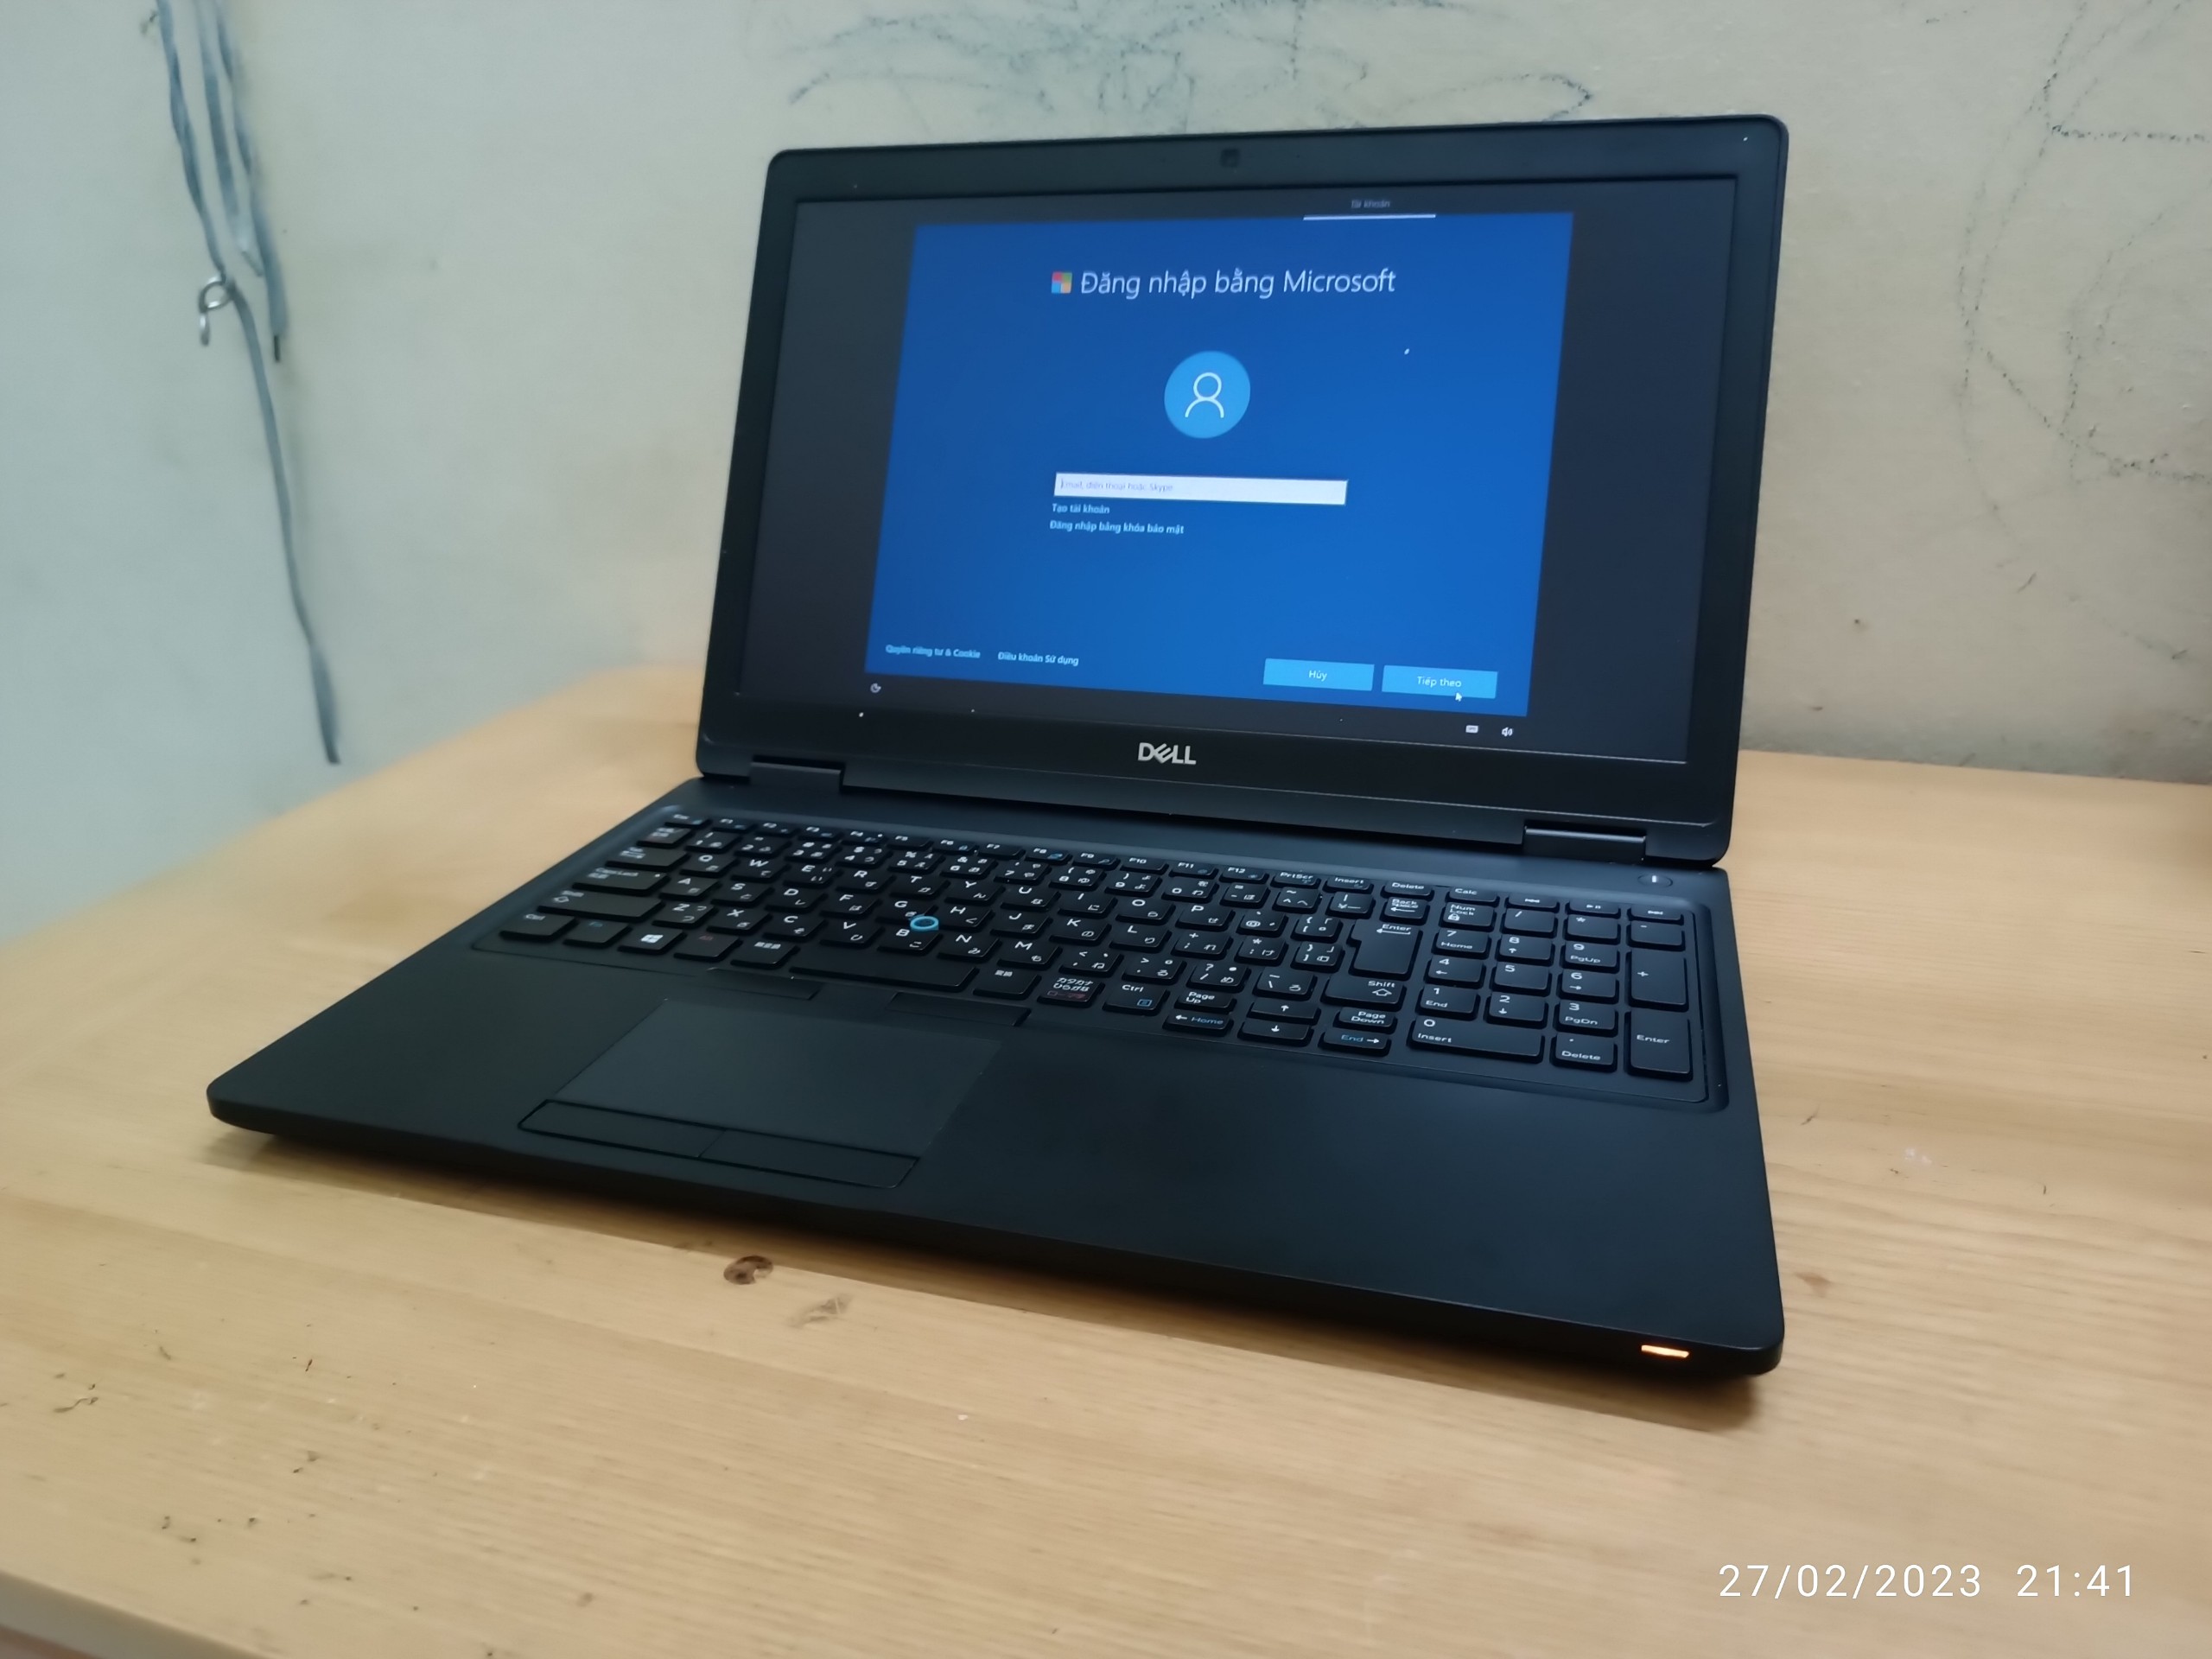 Cần bán Laptop Dell core i7 Ram 16Gb, cạc rời  SSD 256Gb Sách tay từ Nhật